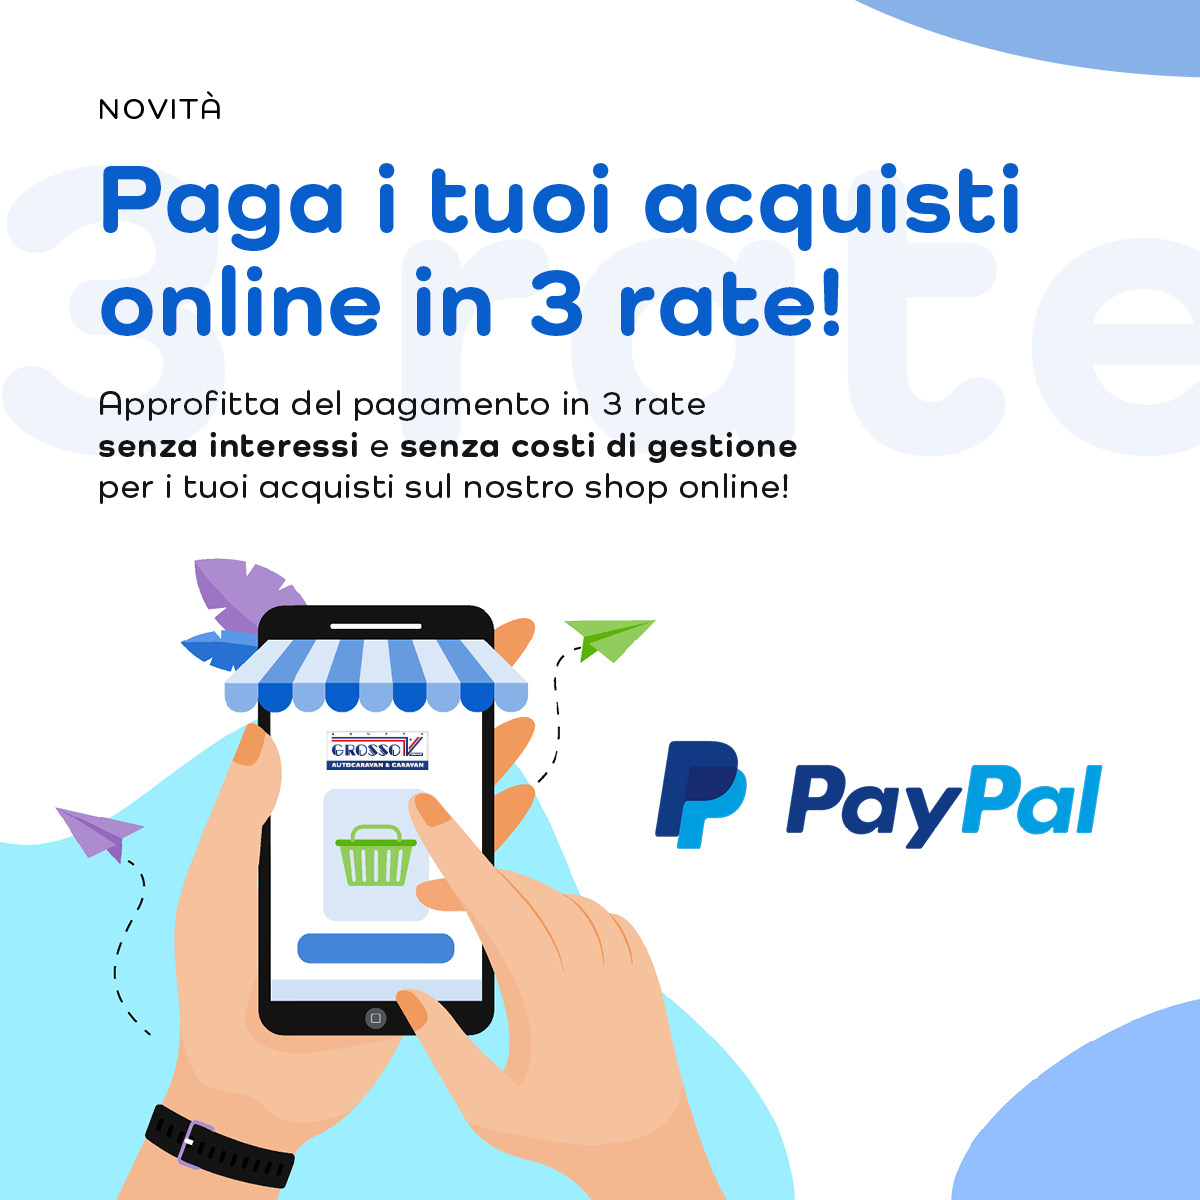 Paga i tuoi acquisti online con PayPal in 3 rate!